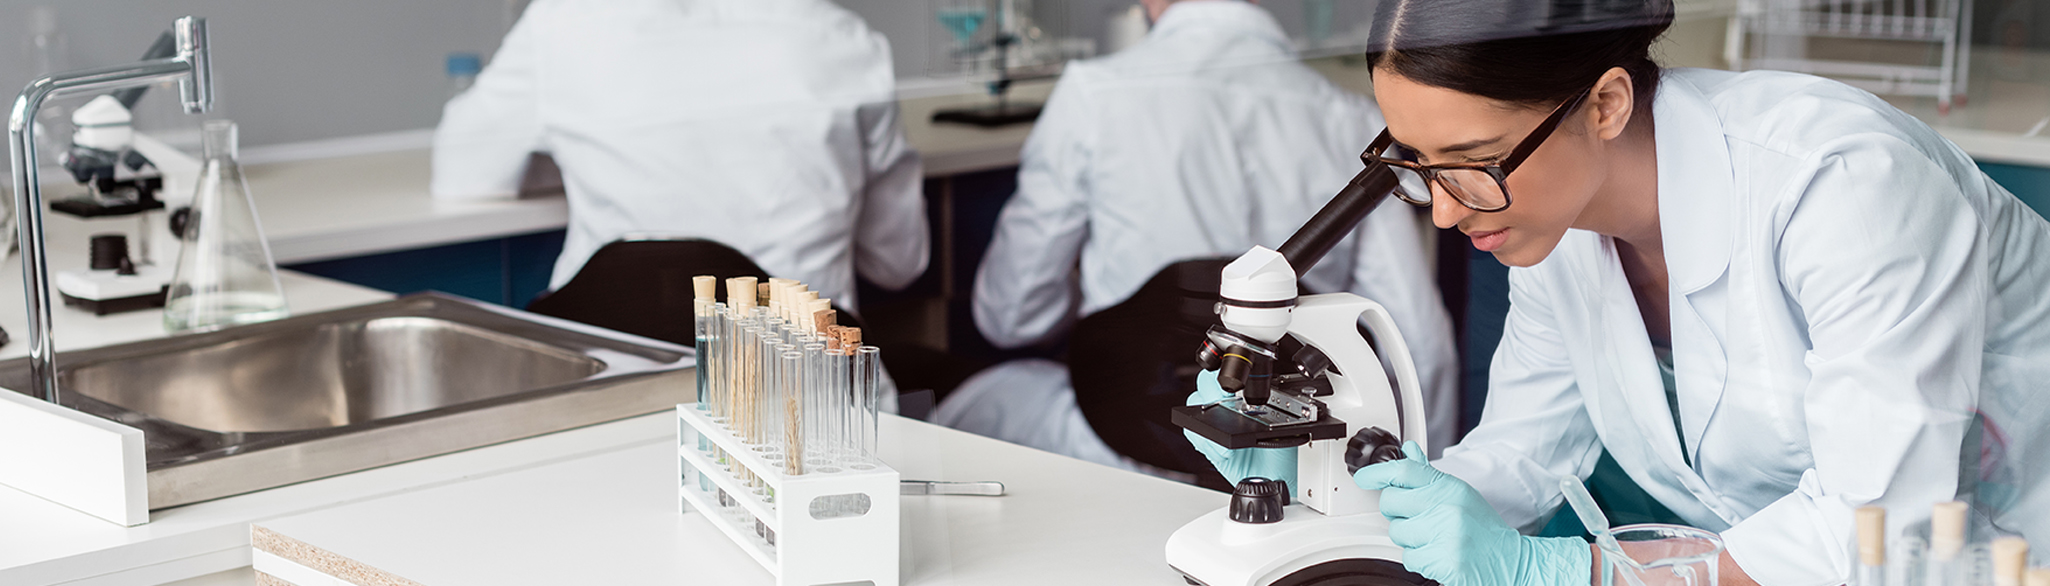 Kvinna sitter i ett lab och tittar i ett mikroskop. I bakgrunden syns hennes kollegor.